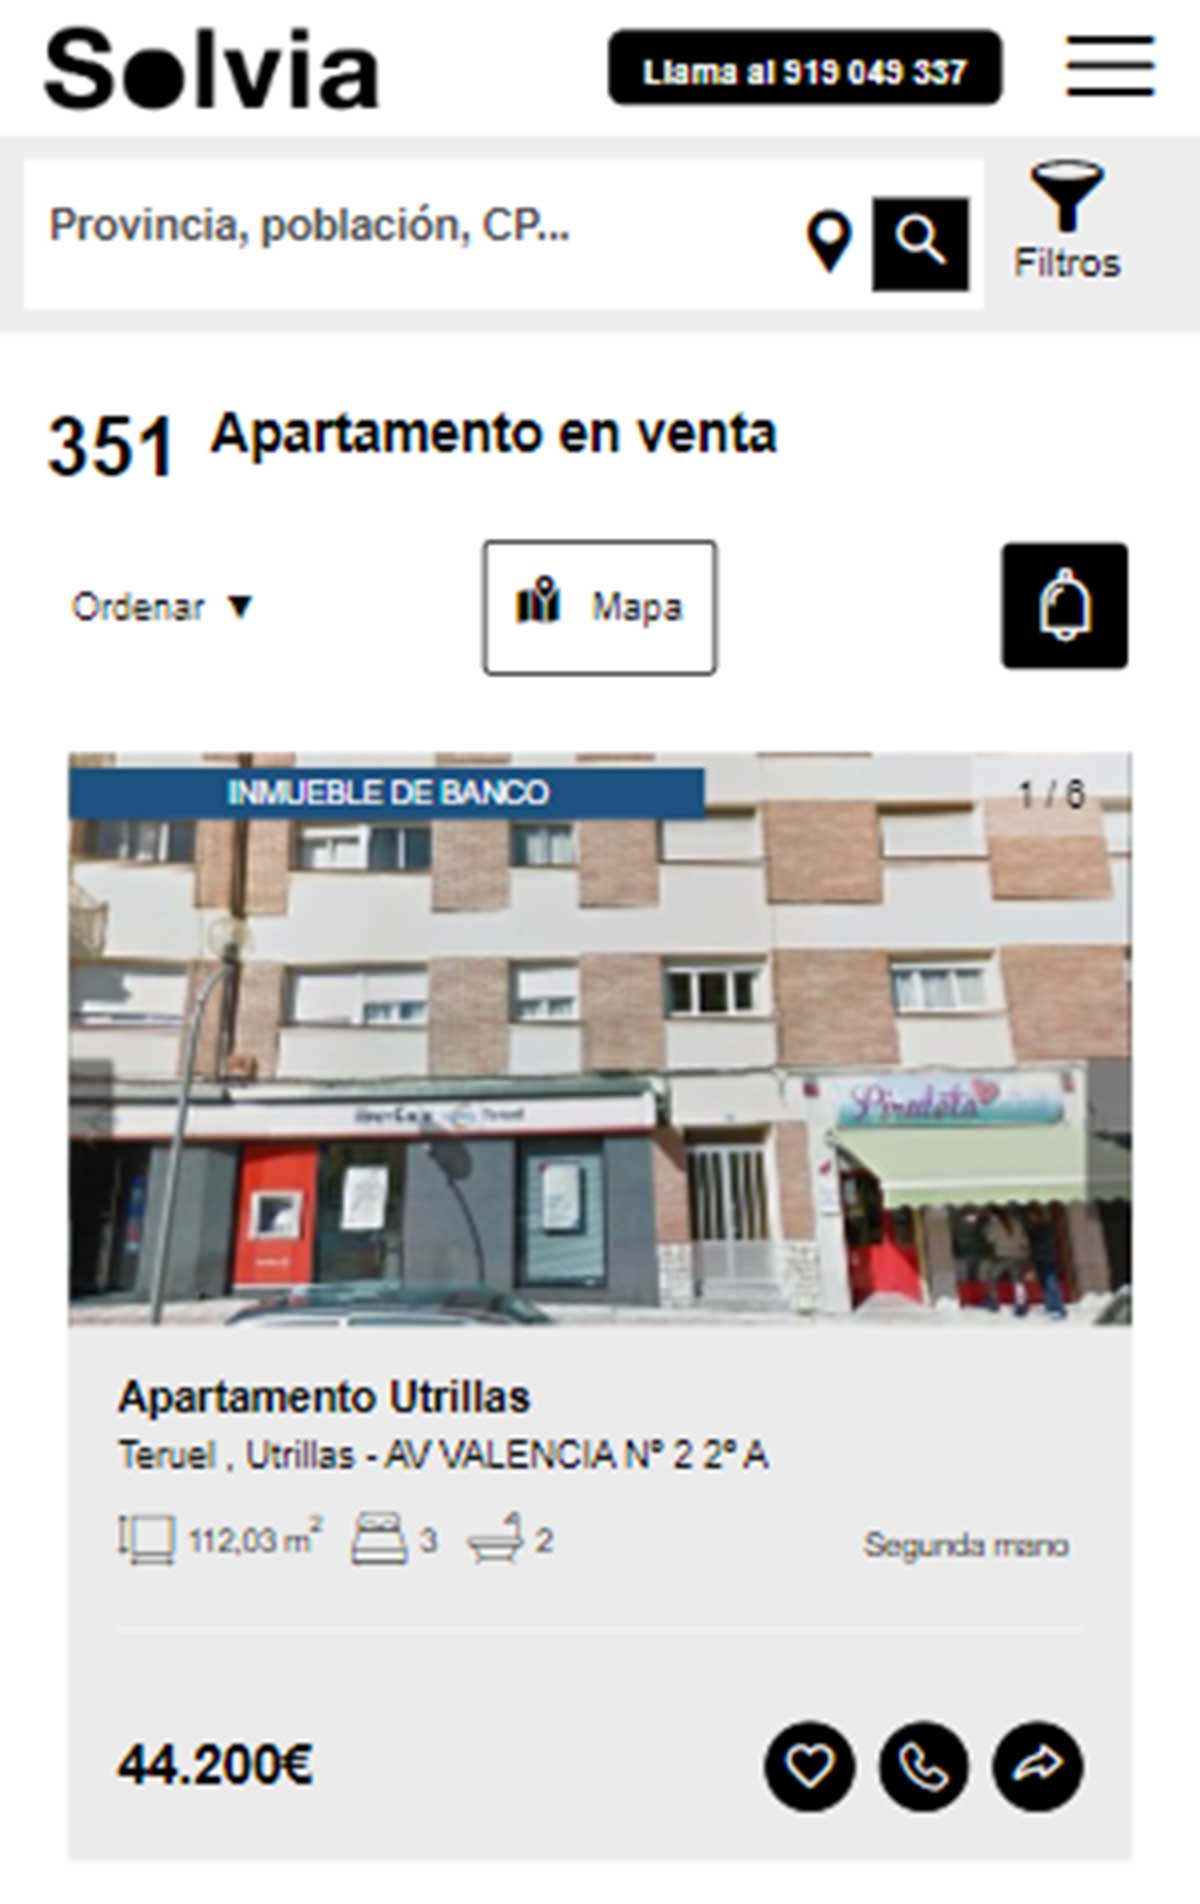 Apartamento a la venta por 44.000 euros